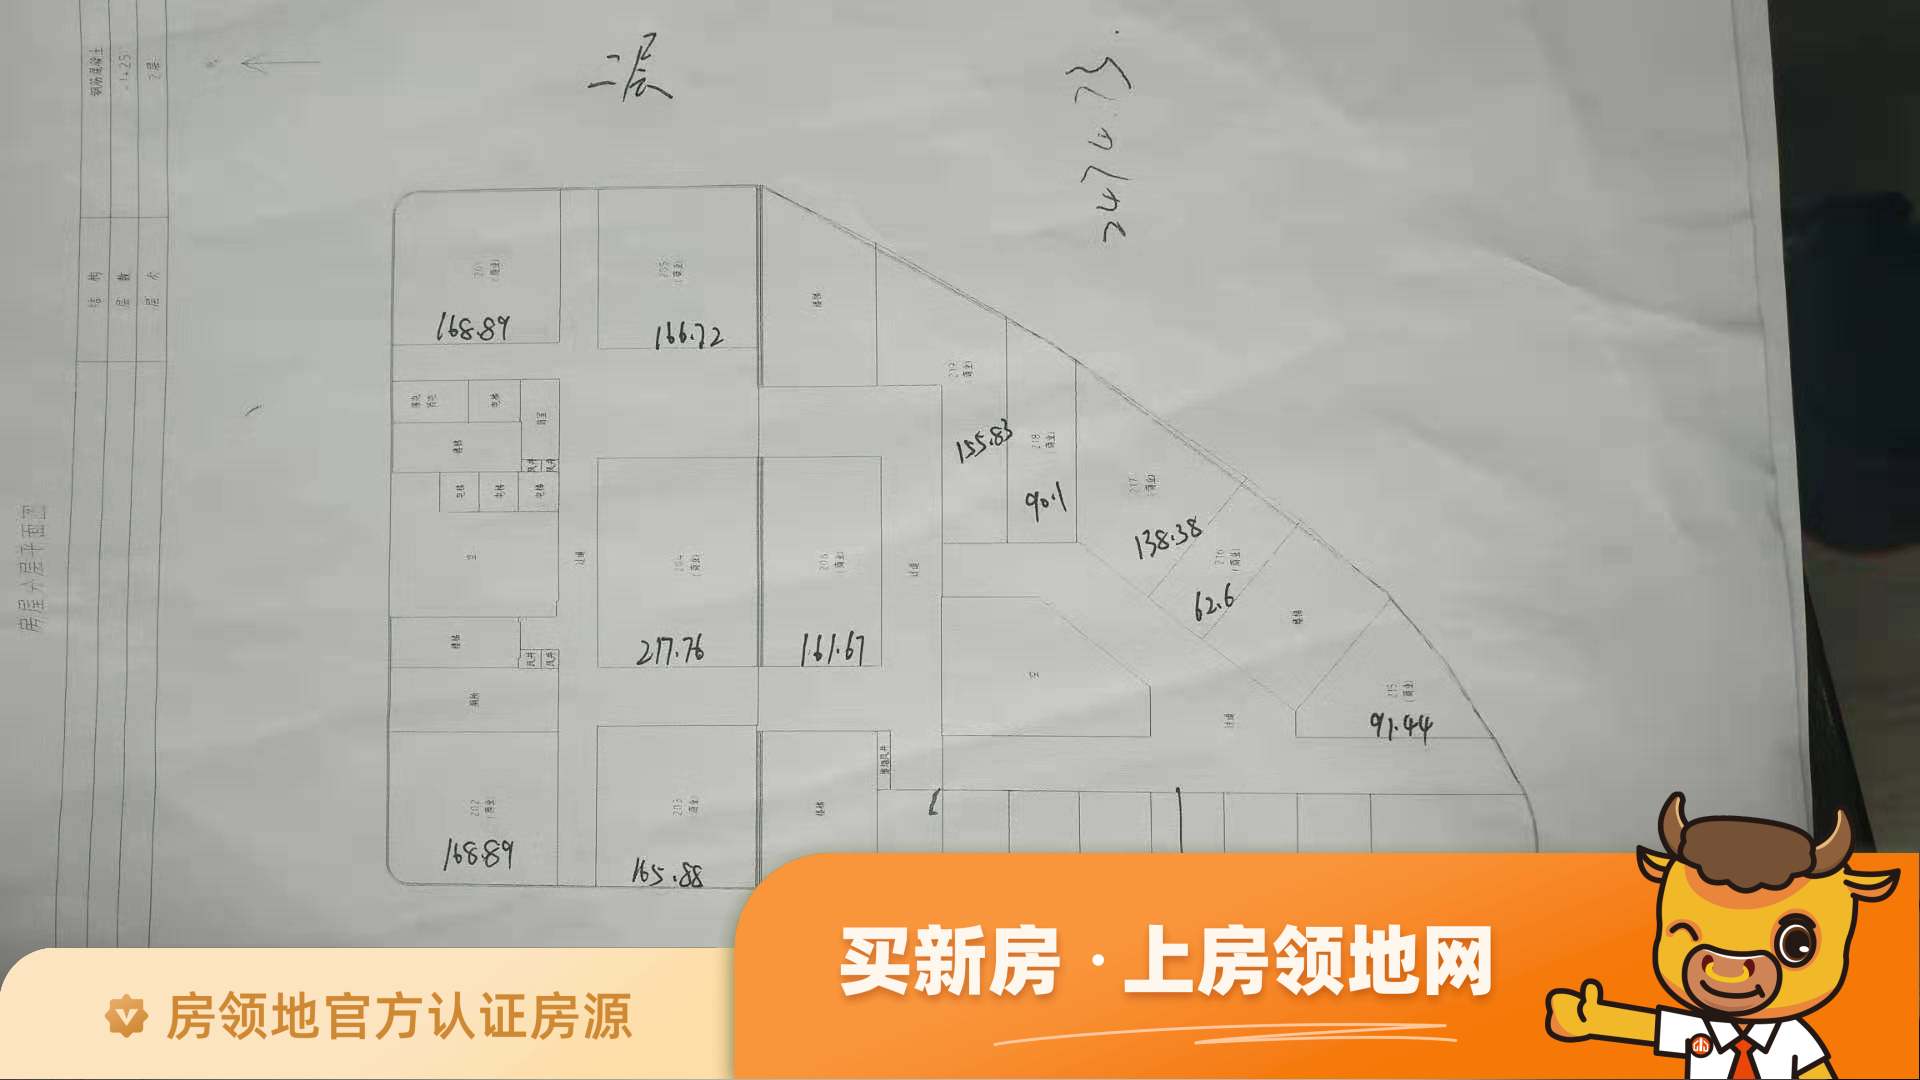 星悦城规划图2